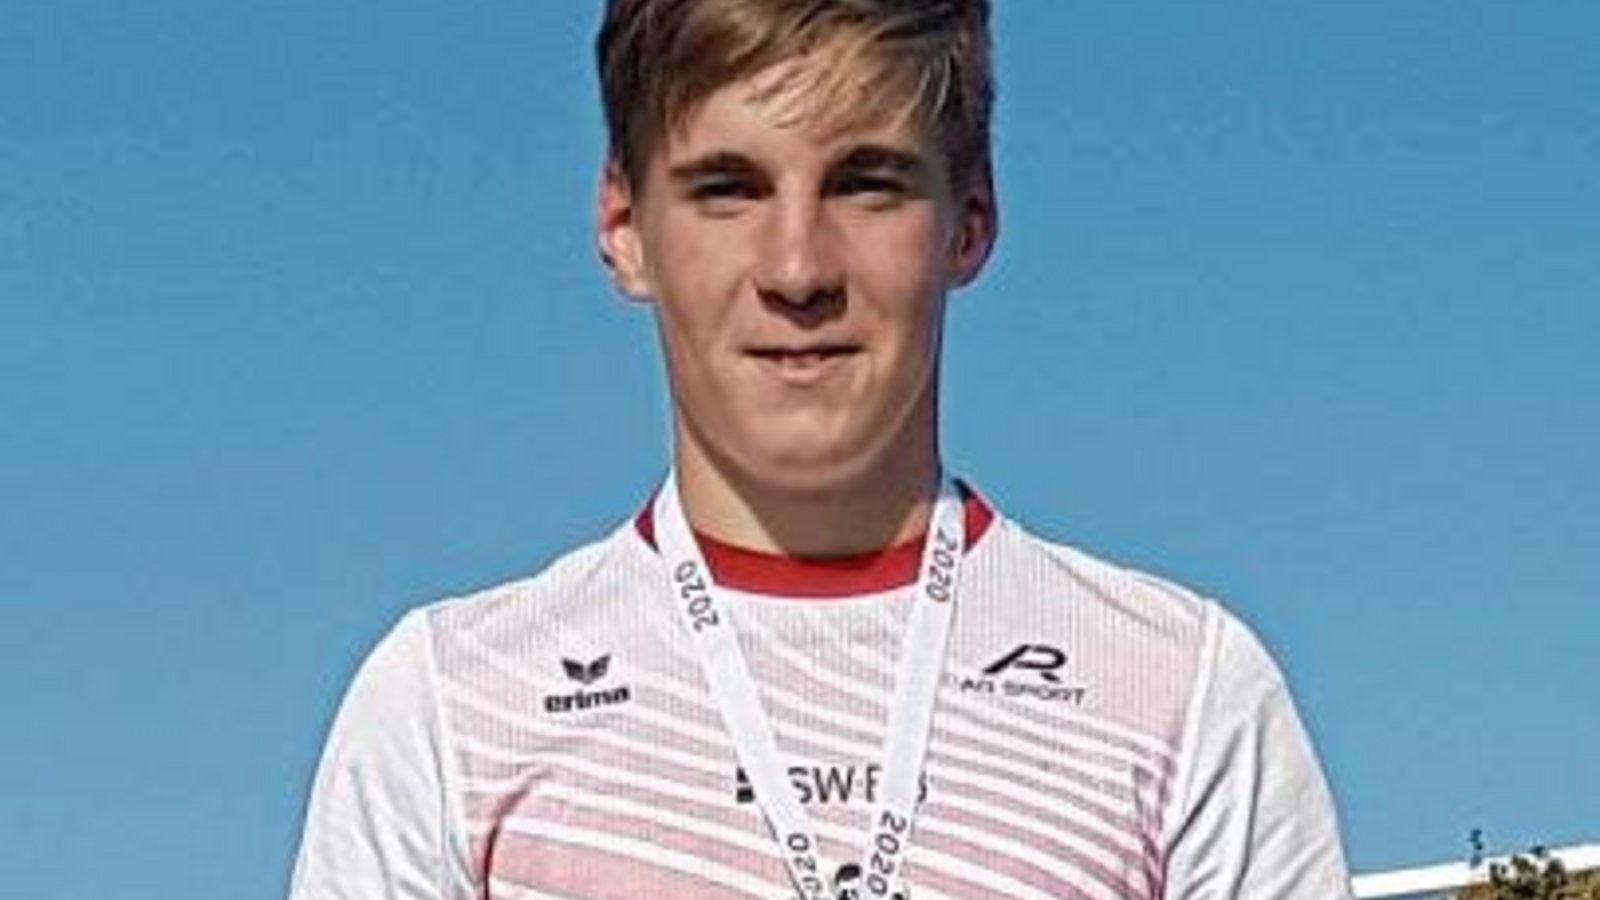 Finn Breitkreutz hat sich bei den württembergischen Meisterschaften der U 16 als wahrer Medaillensammler betätigt. Foto: privat